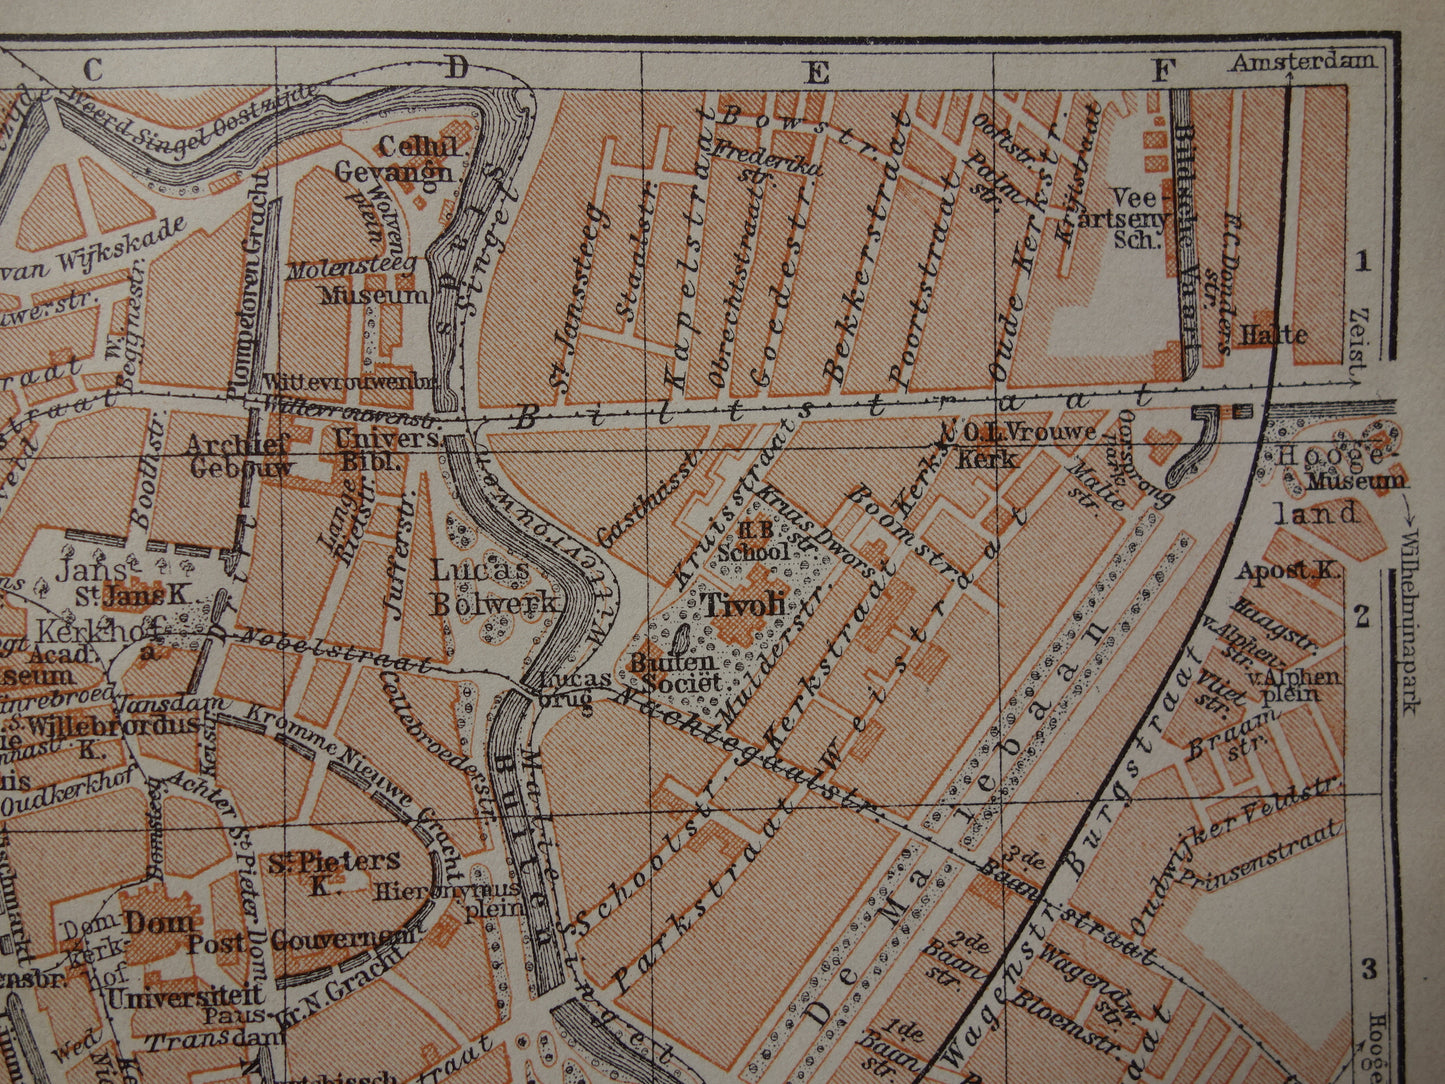 UTRECHT oude kaart van Utrecht uit 1910 kleine originele antieke plattegrond vintage landkaart